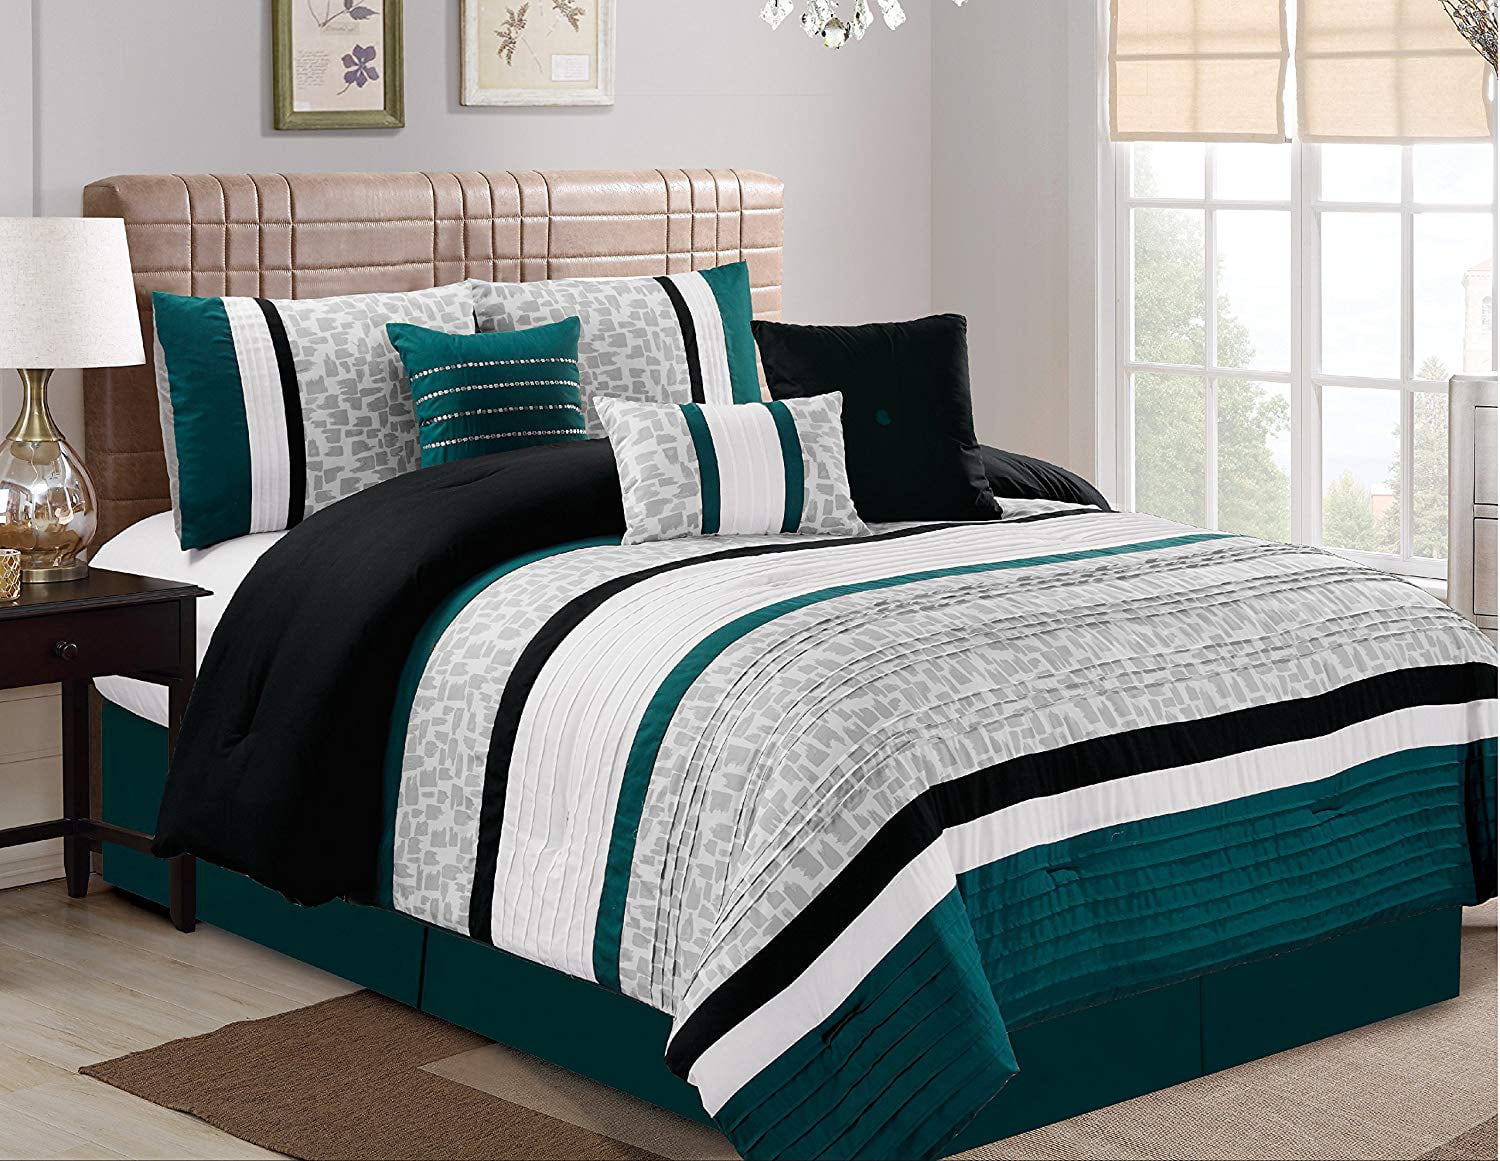 Hgmart Bedding Comforter Set 7 Piece, Grey King Size Bedroom Comforter Set